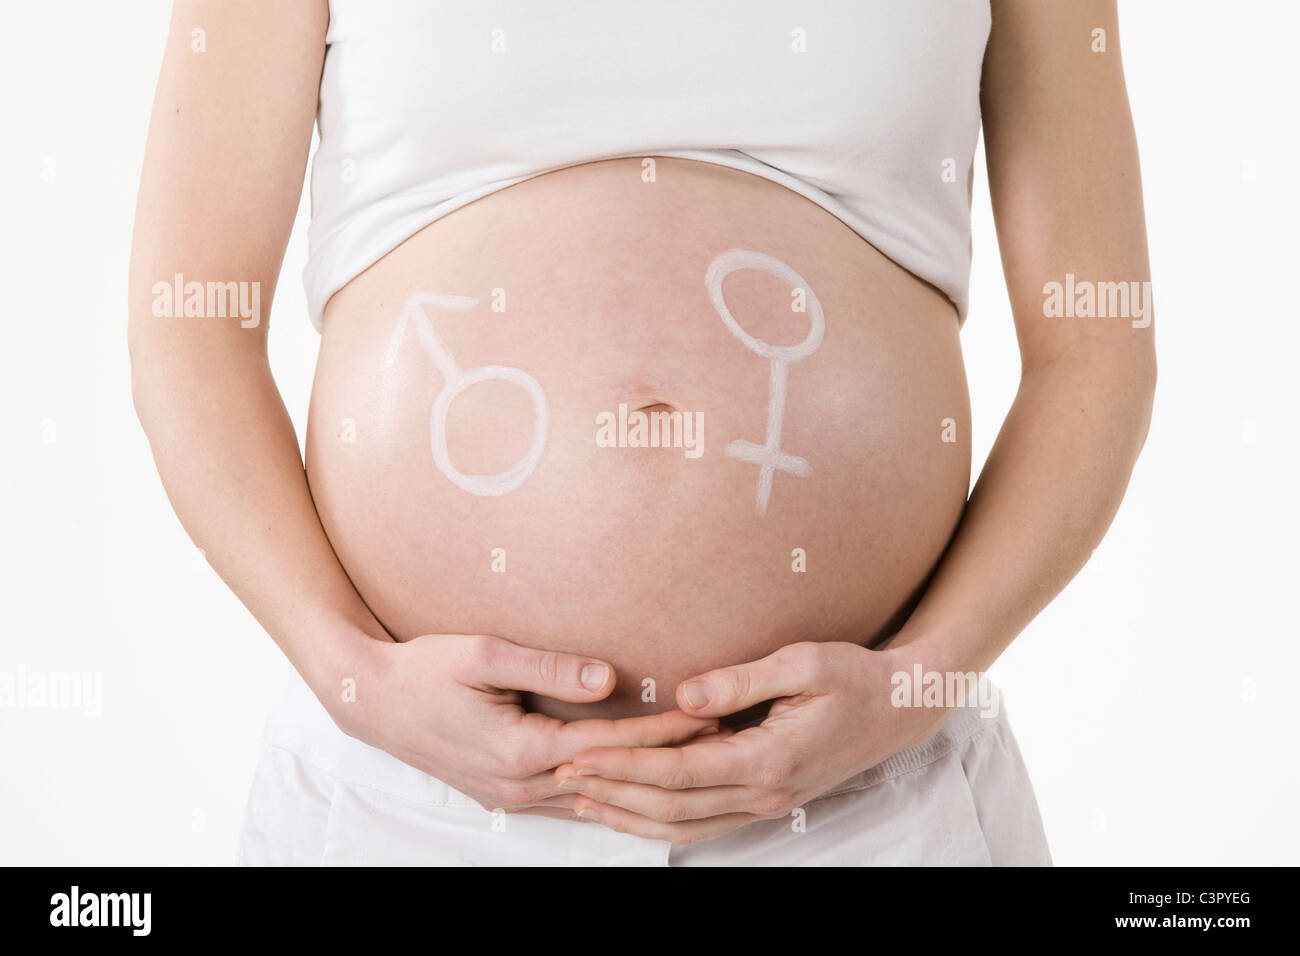 Maschio e femmina simbolo disegnato su una donna in stato di gravidanza la pancia, sezione mediana Foto Stock